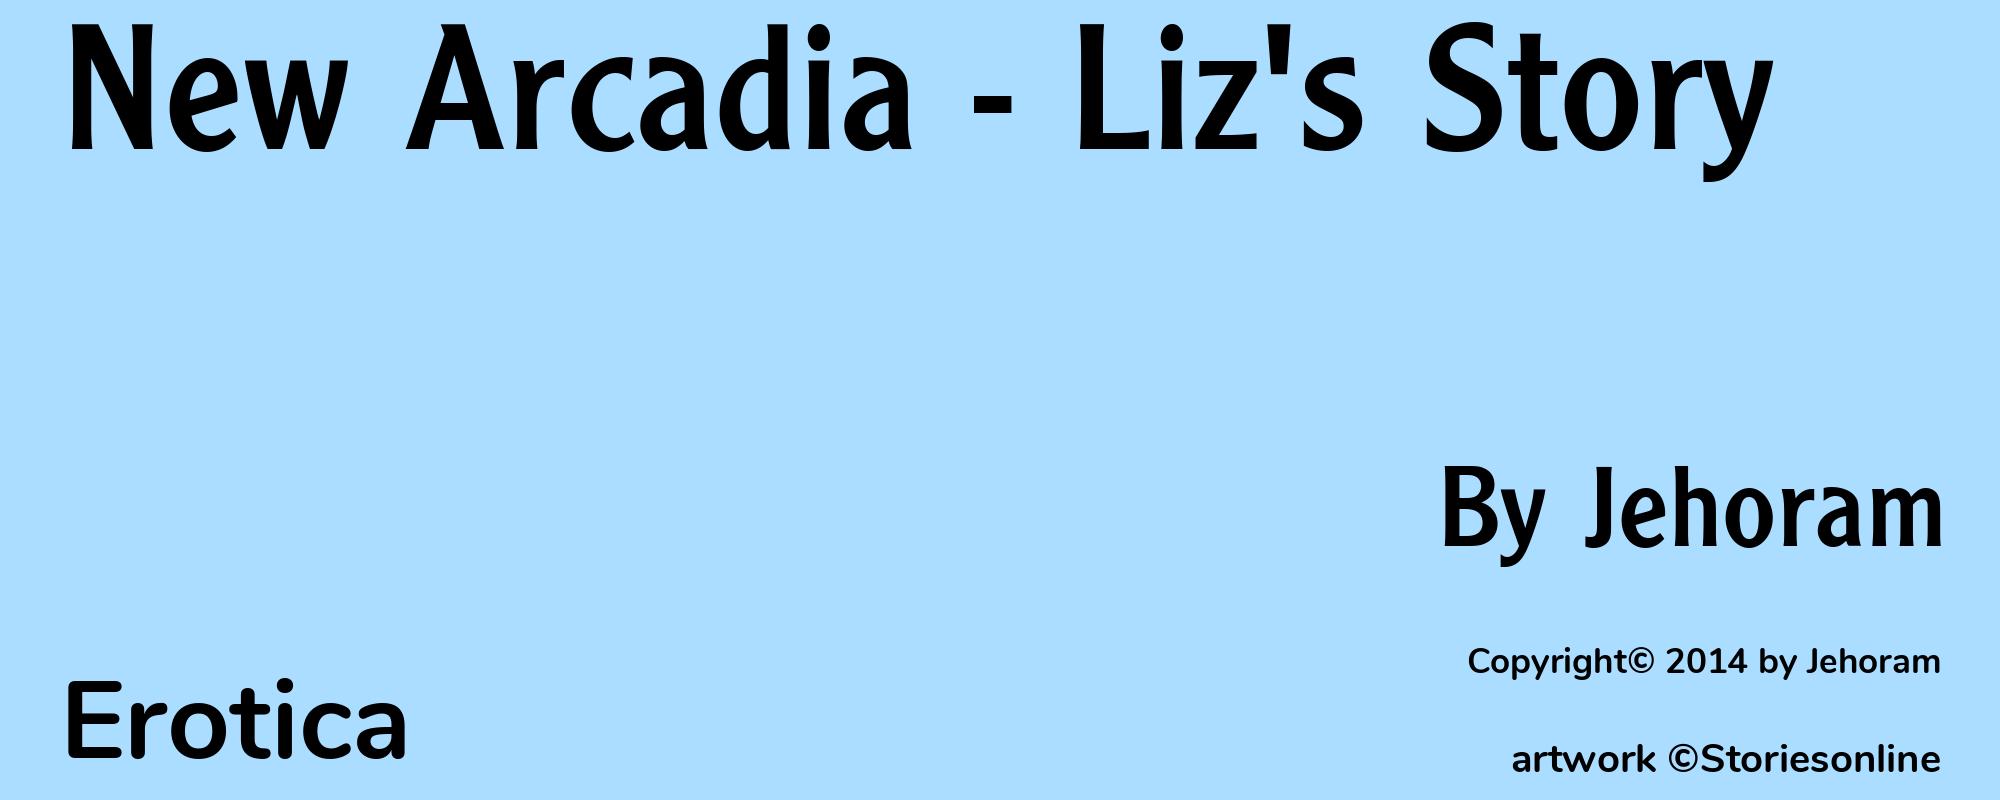 New Arcadia - Liz's Story - Cover